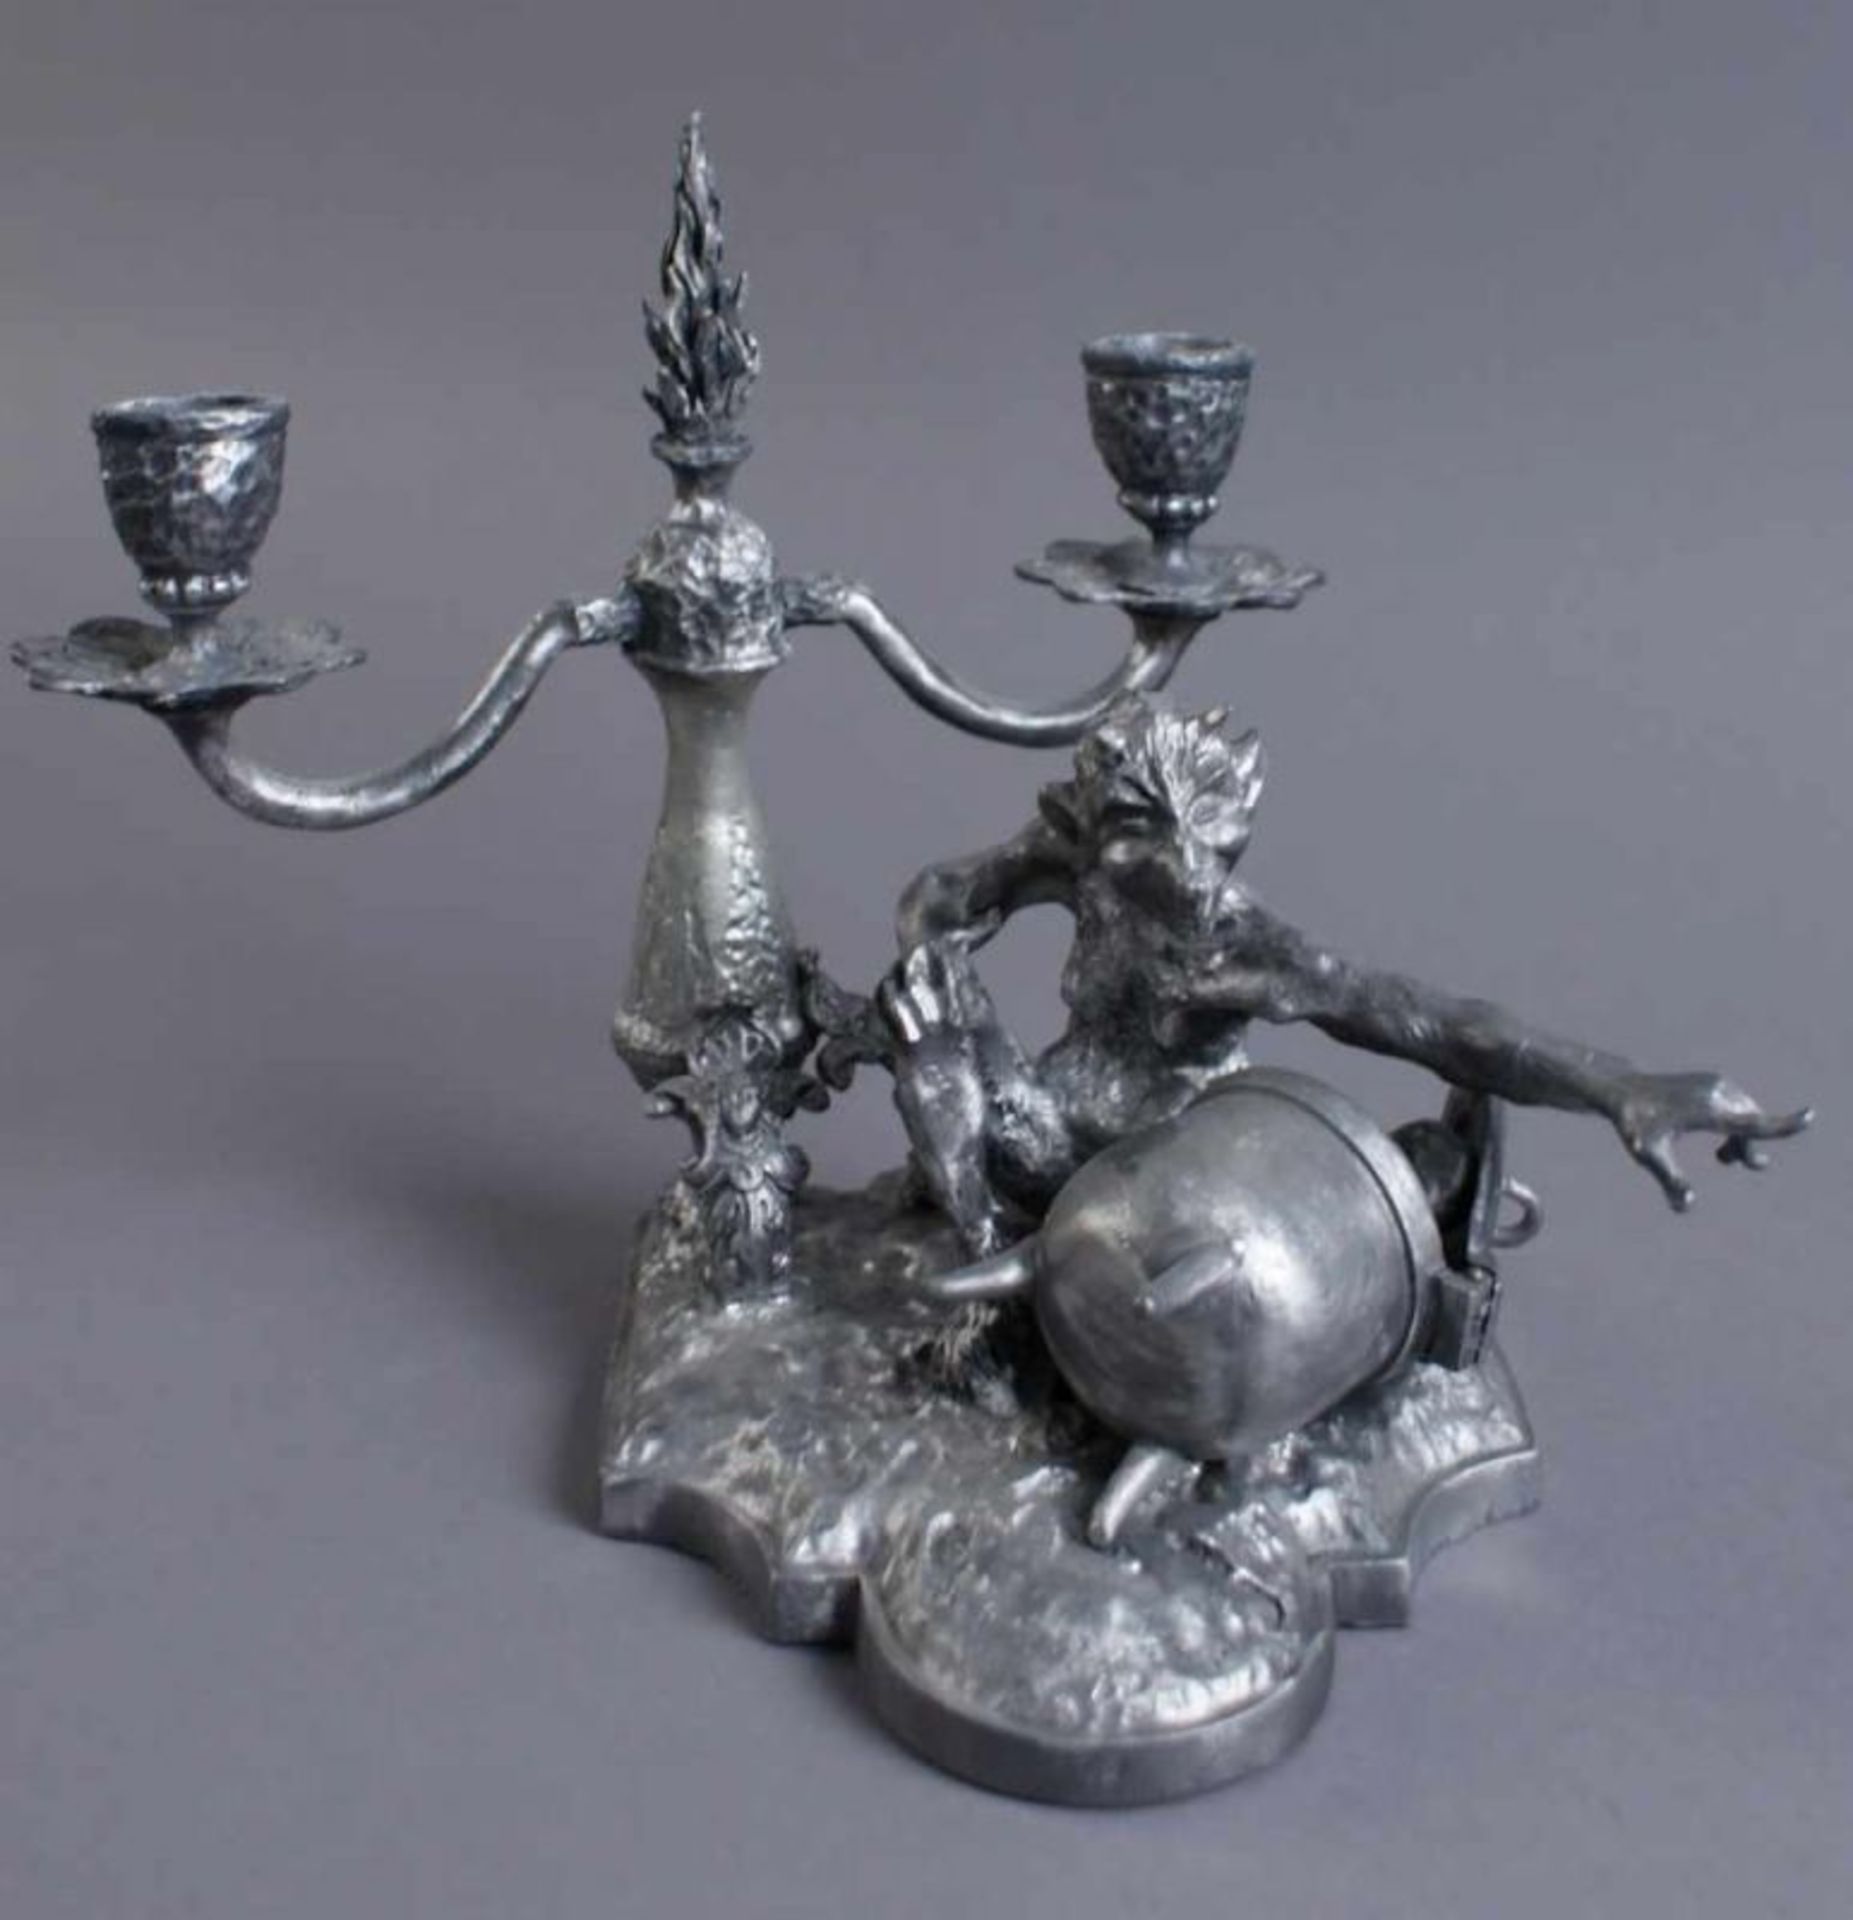 Tischleuchter, Kerzenleuchter aus Zinn mit einem Teufel, 2-flammig, H 20 cm 20.17 % buyer's